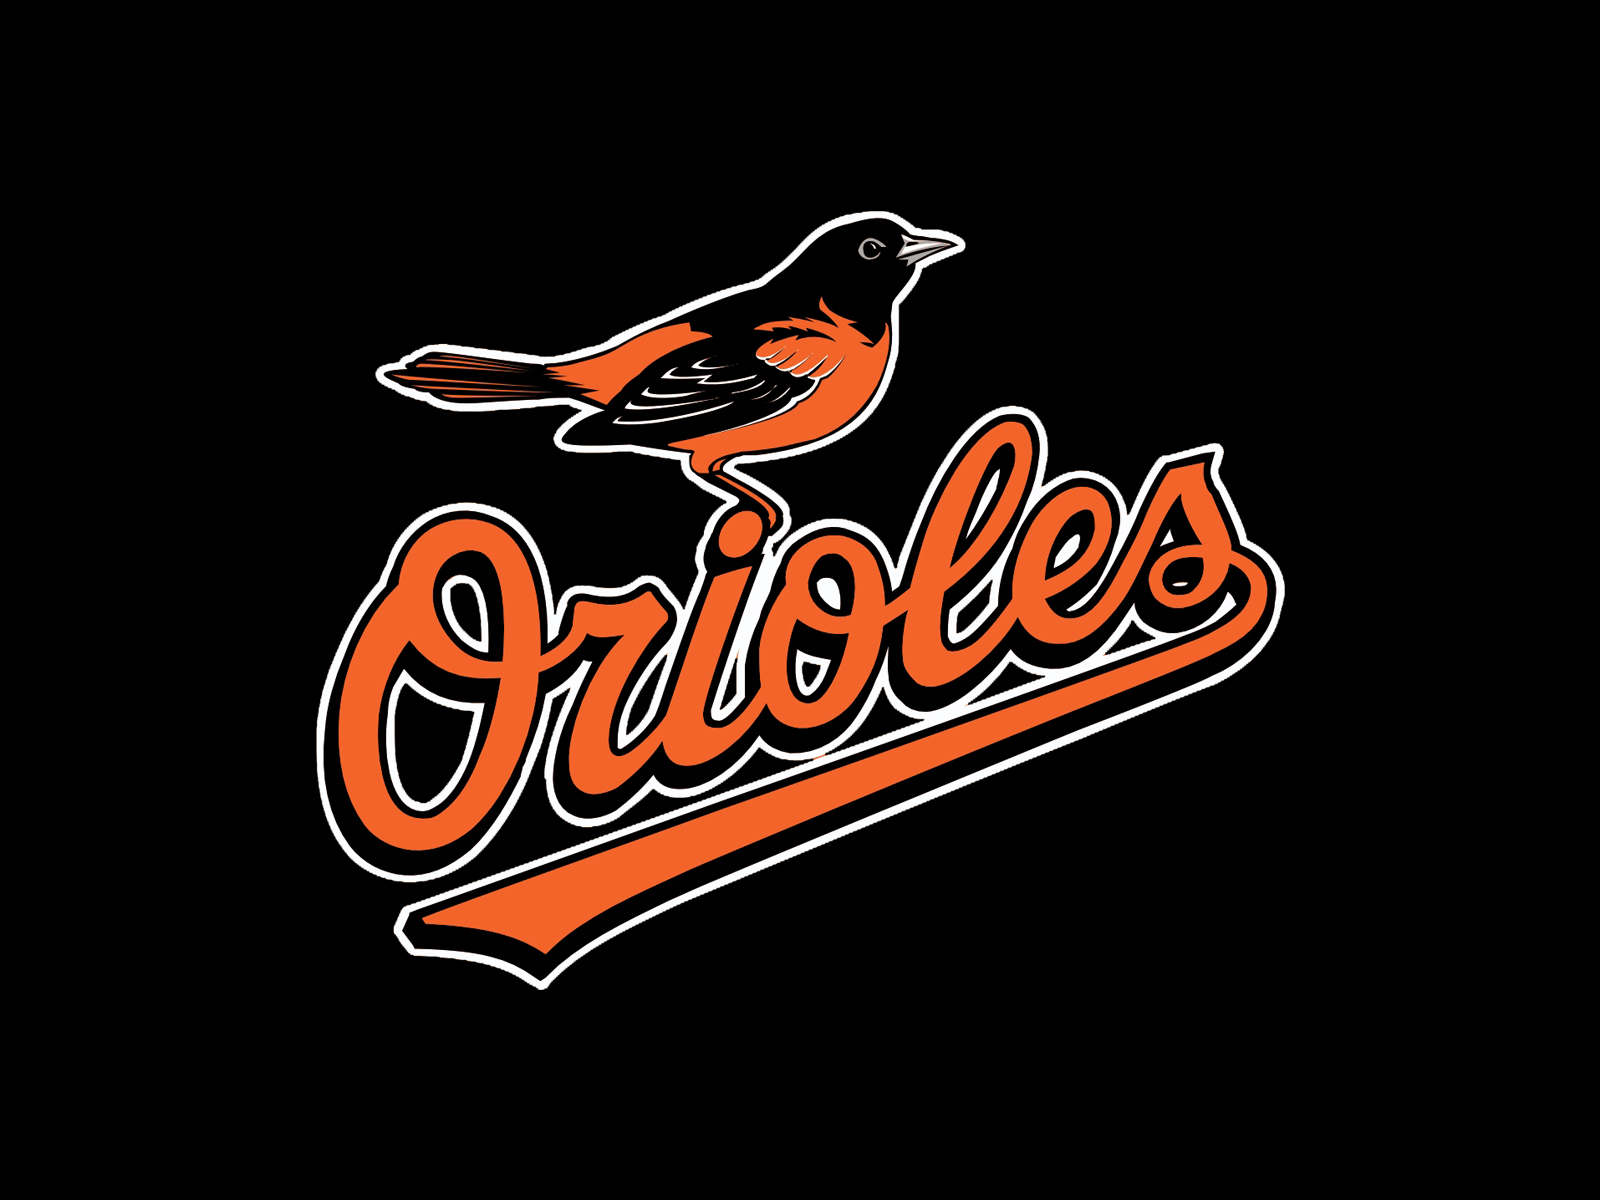 Baltimore Orioles Of Minnesota Twins Logo Wallpaper League Baseball